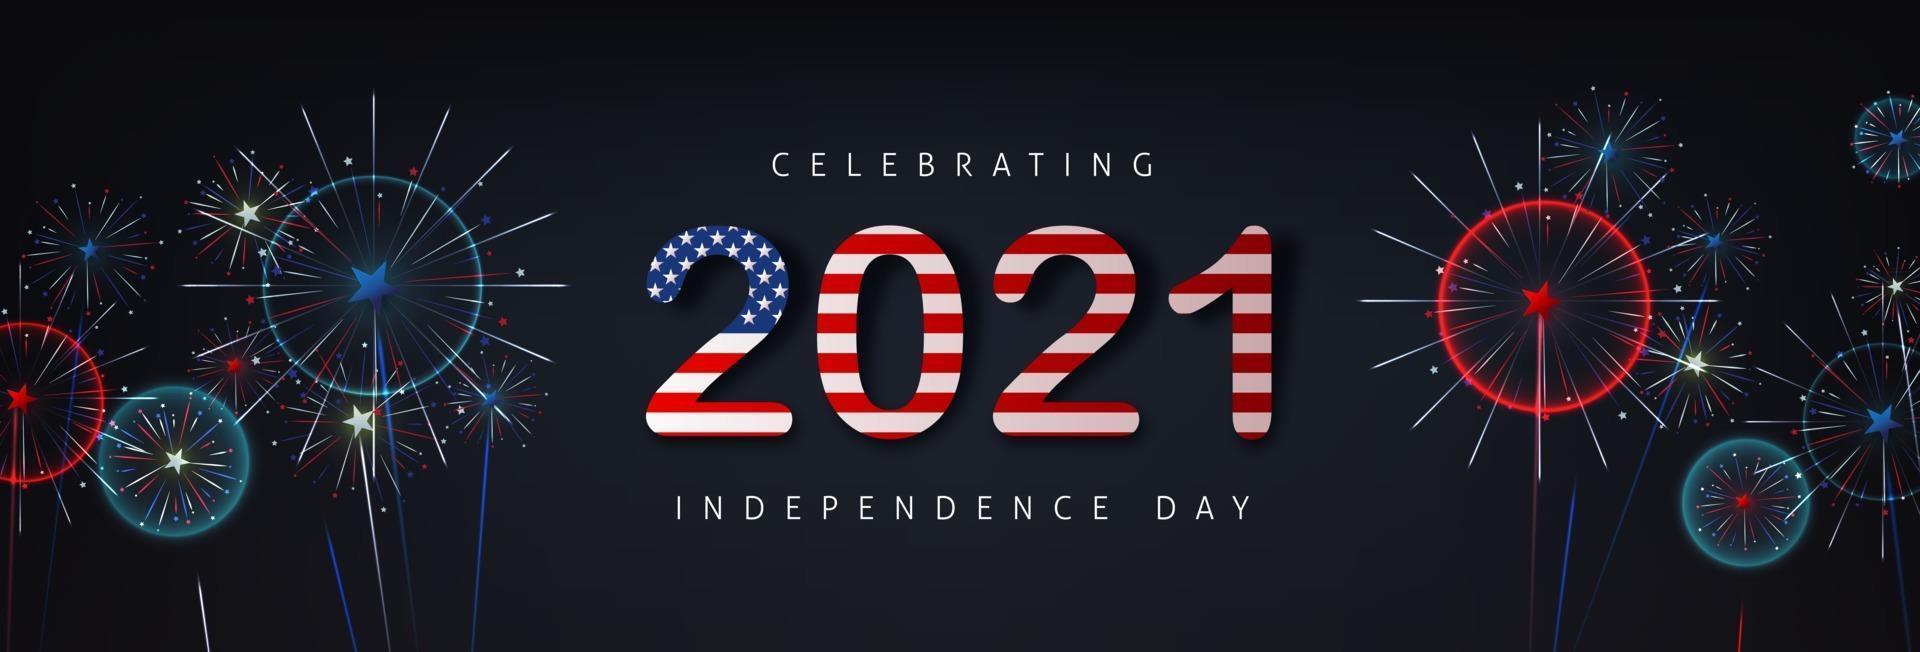 självständighetsdagen usa firande banner med fyrverkeri bakgrund och text 2021 amerikanska flaggan vektor